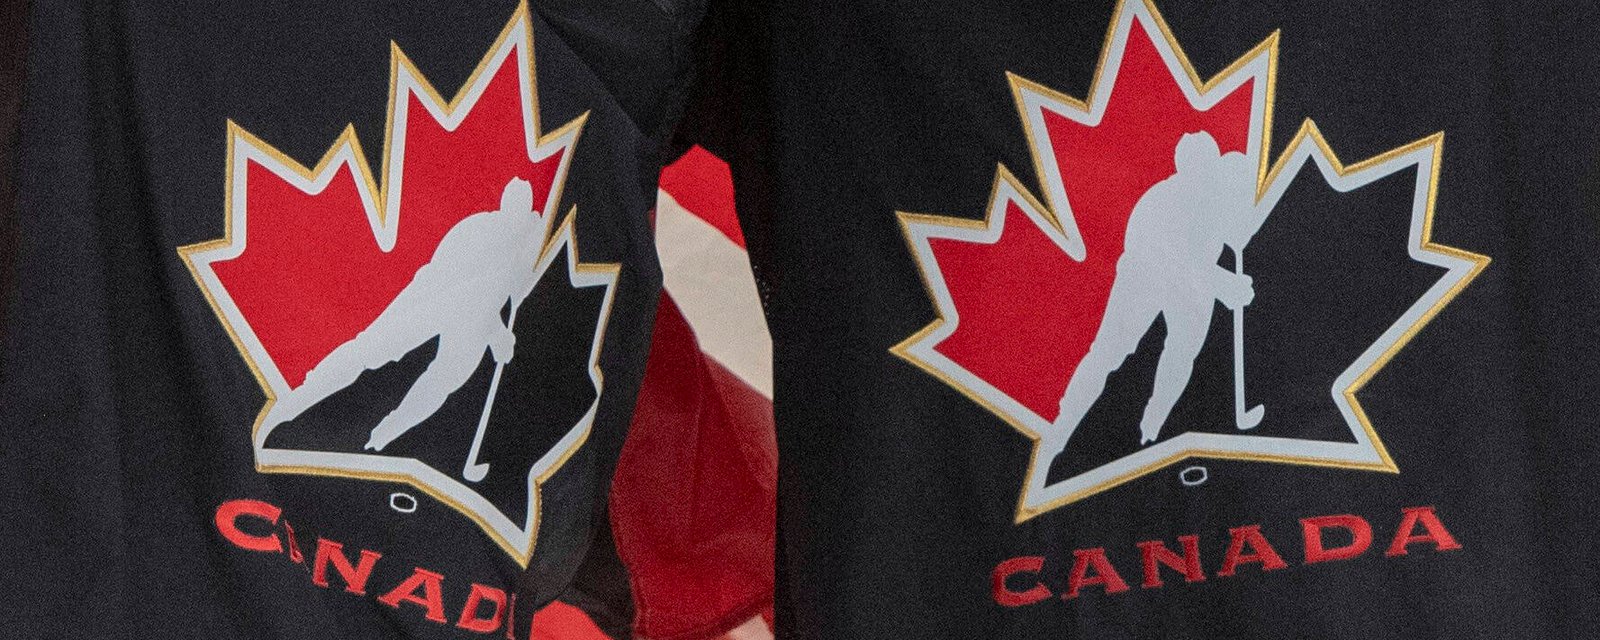 TEAM CANADA 2018: Pierre LeBrun dévoile pourquoi la LNH ne peut pas nommer les joueurs impliqués